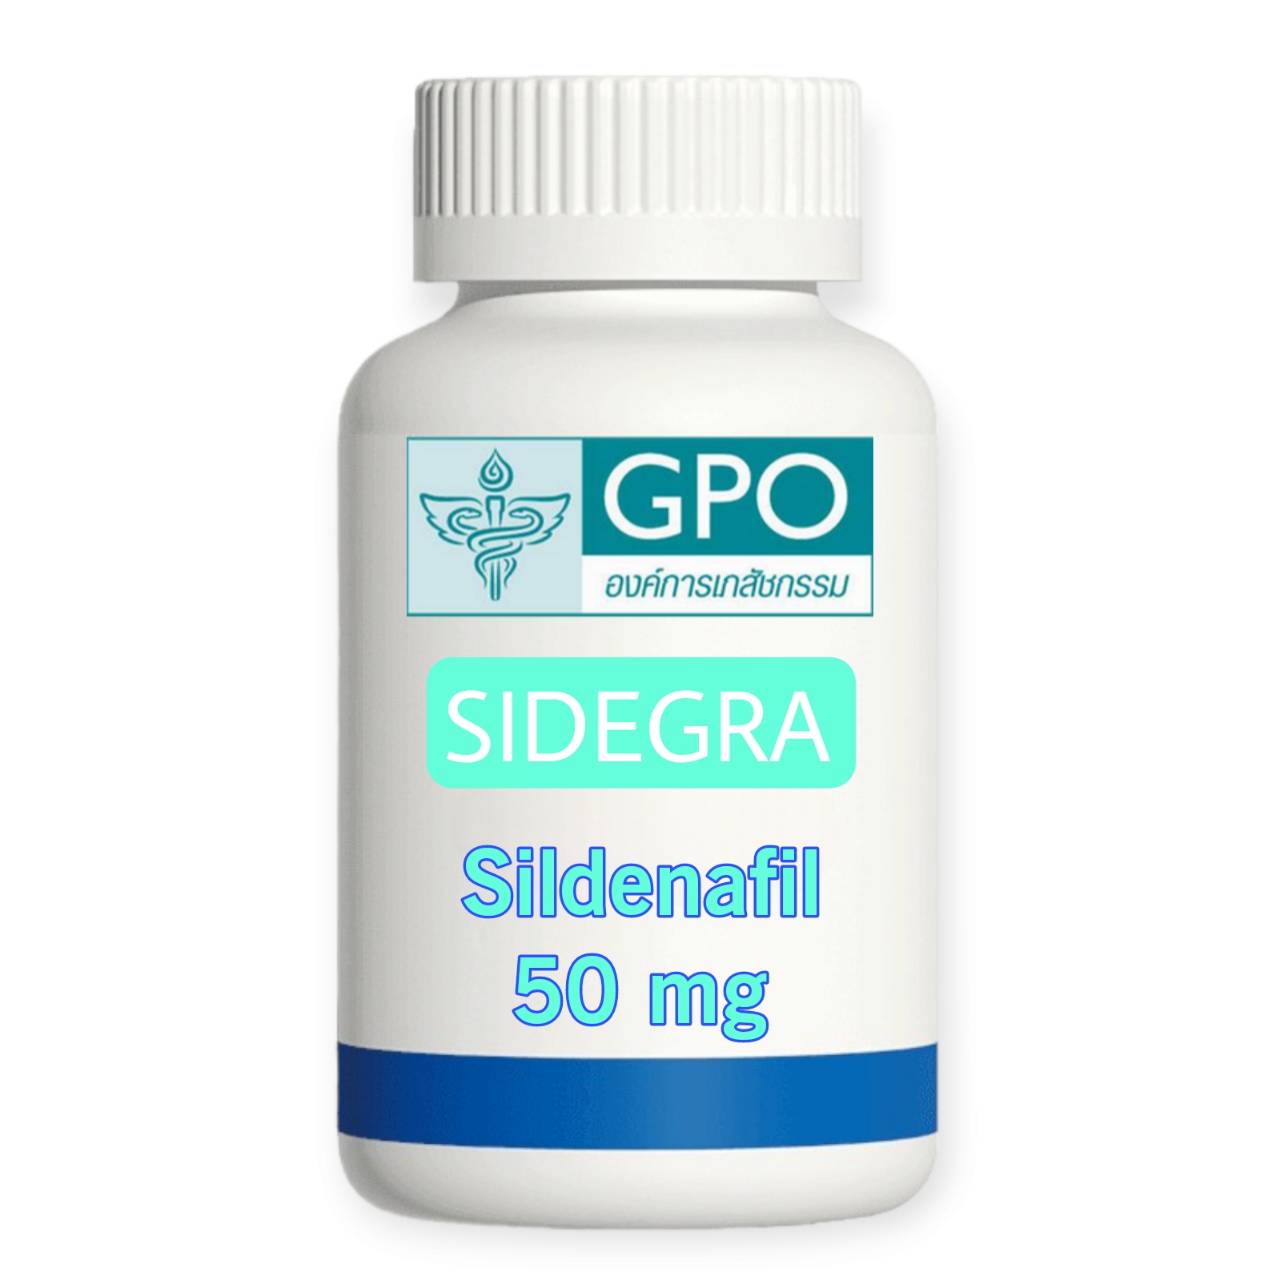 sidegra-sildenafil 50 mg